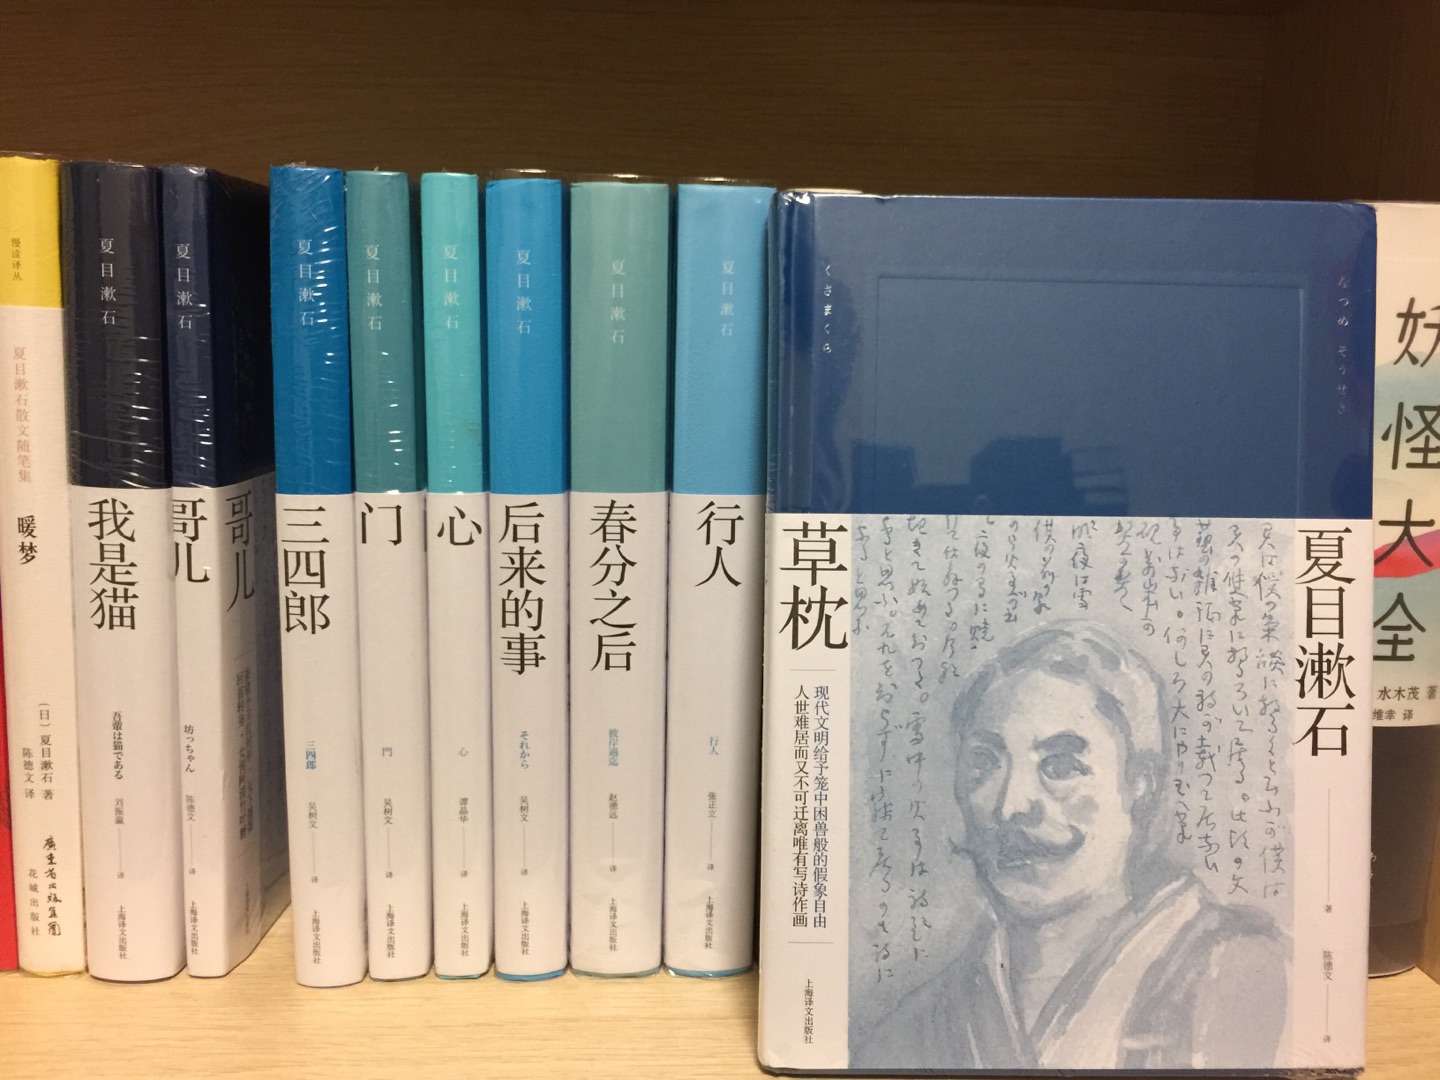 作为夏目漱石的书迷，上海译文又出了这么漂亮的一套，当然要收下。